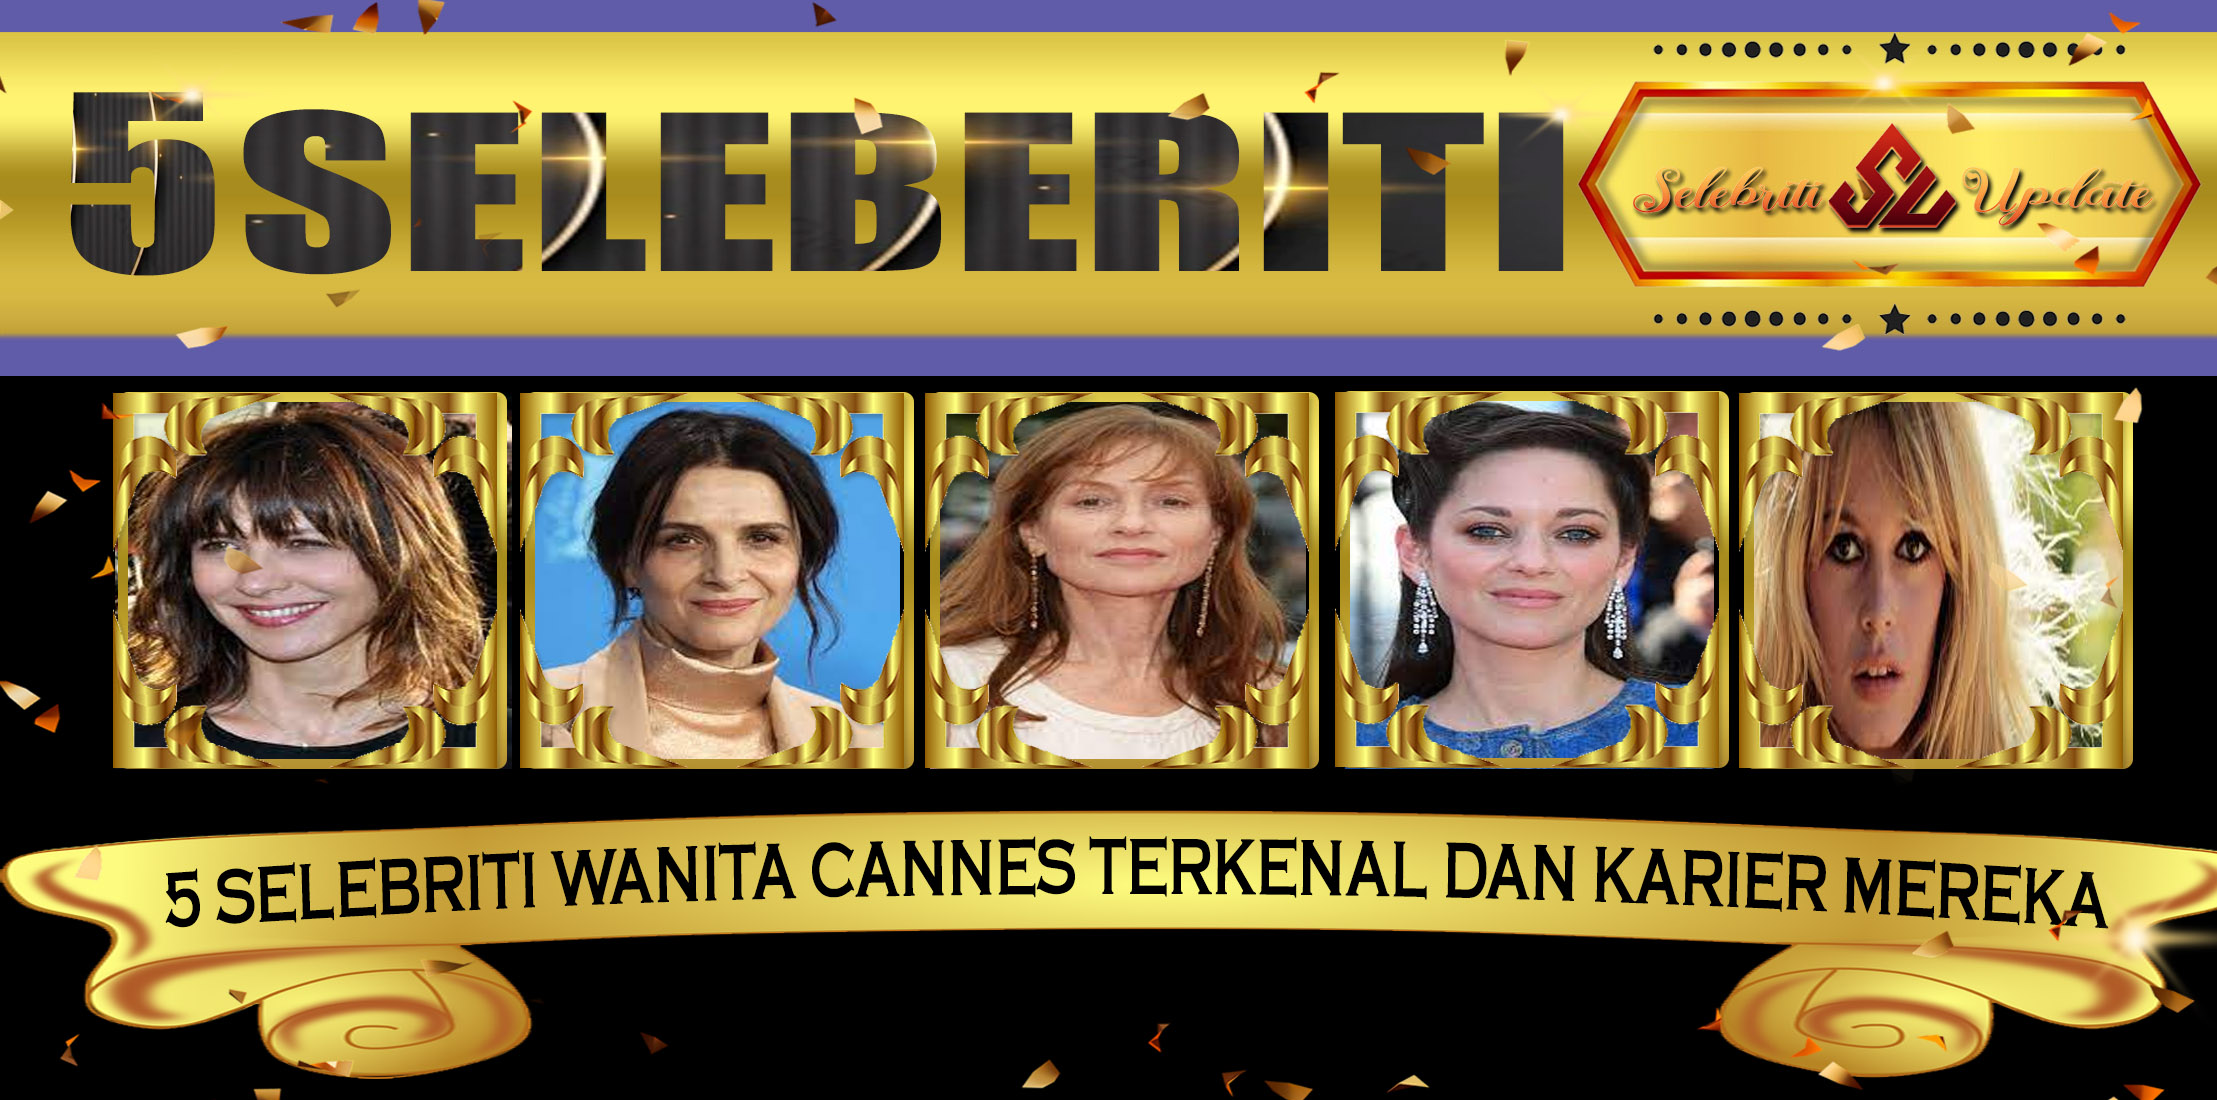 5 Selebriti Wanita Cannes Terkenal dan Karier Mereka